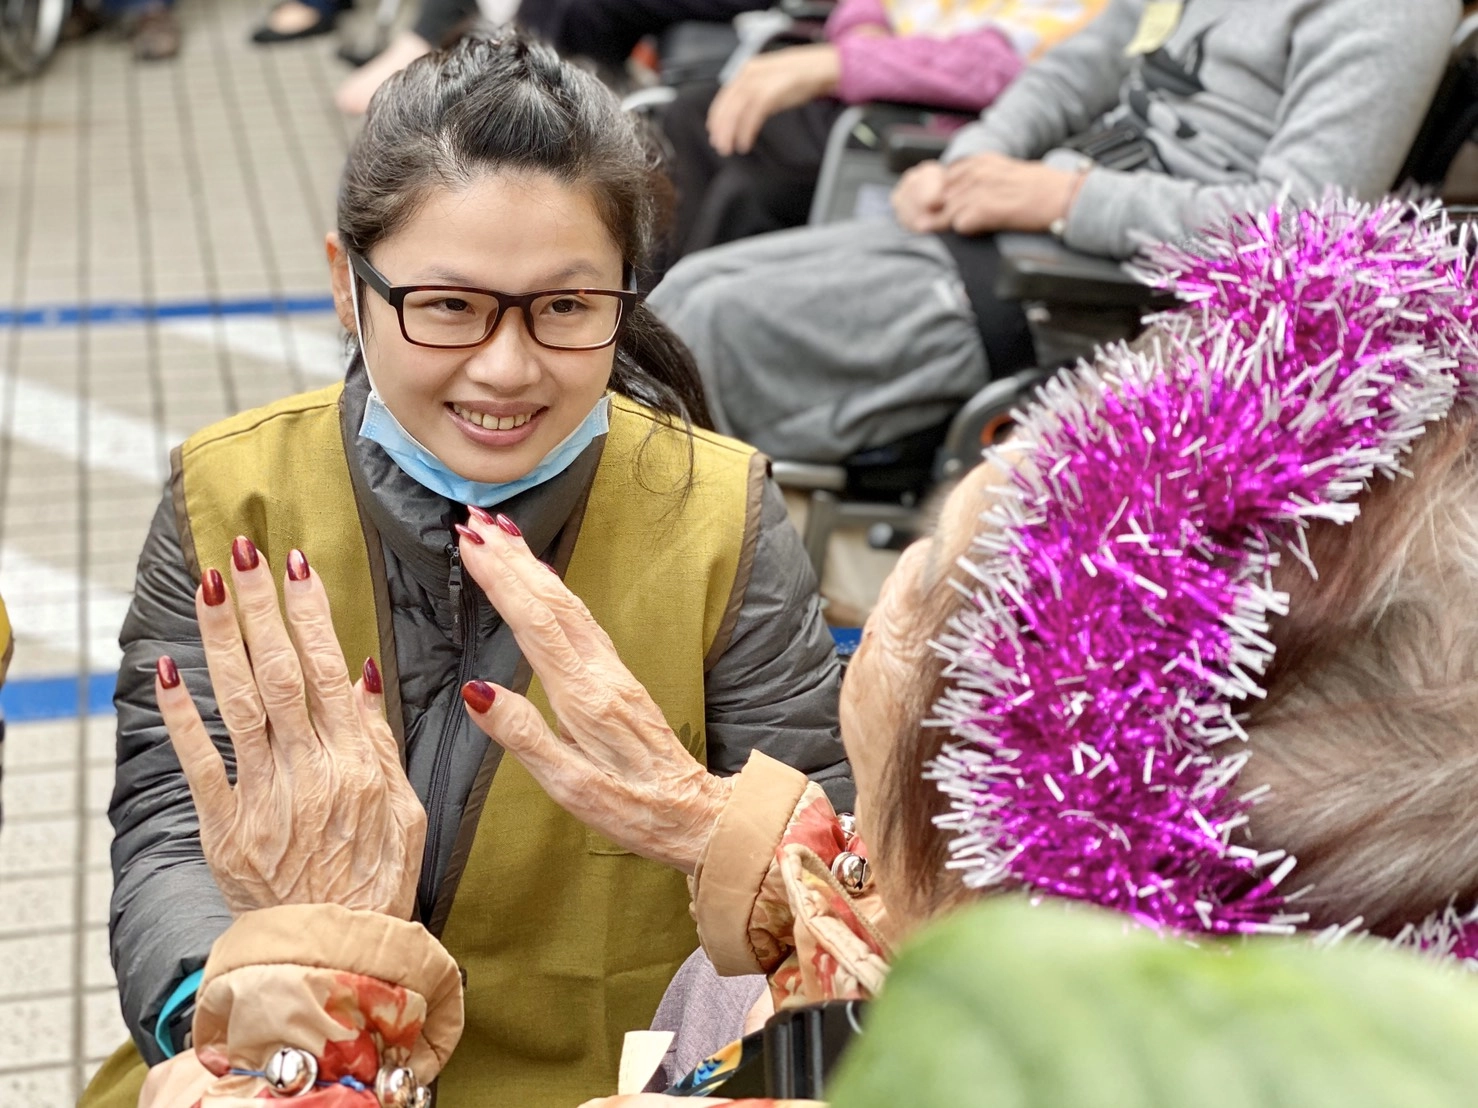 一群臺藝大慈青社的學生，在周六假日跟著志工前往板橋一個護理之家關懷，帶動護理之家住民渡過一個歡喜、感動的周末假日。